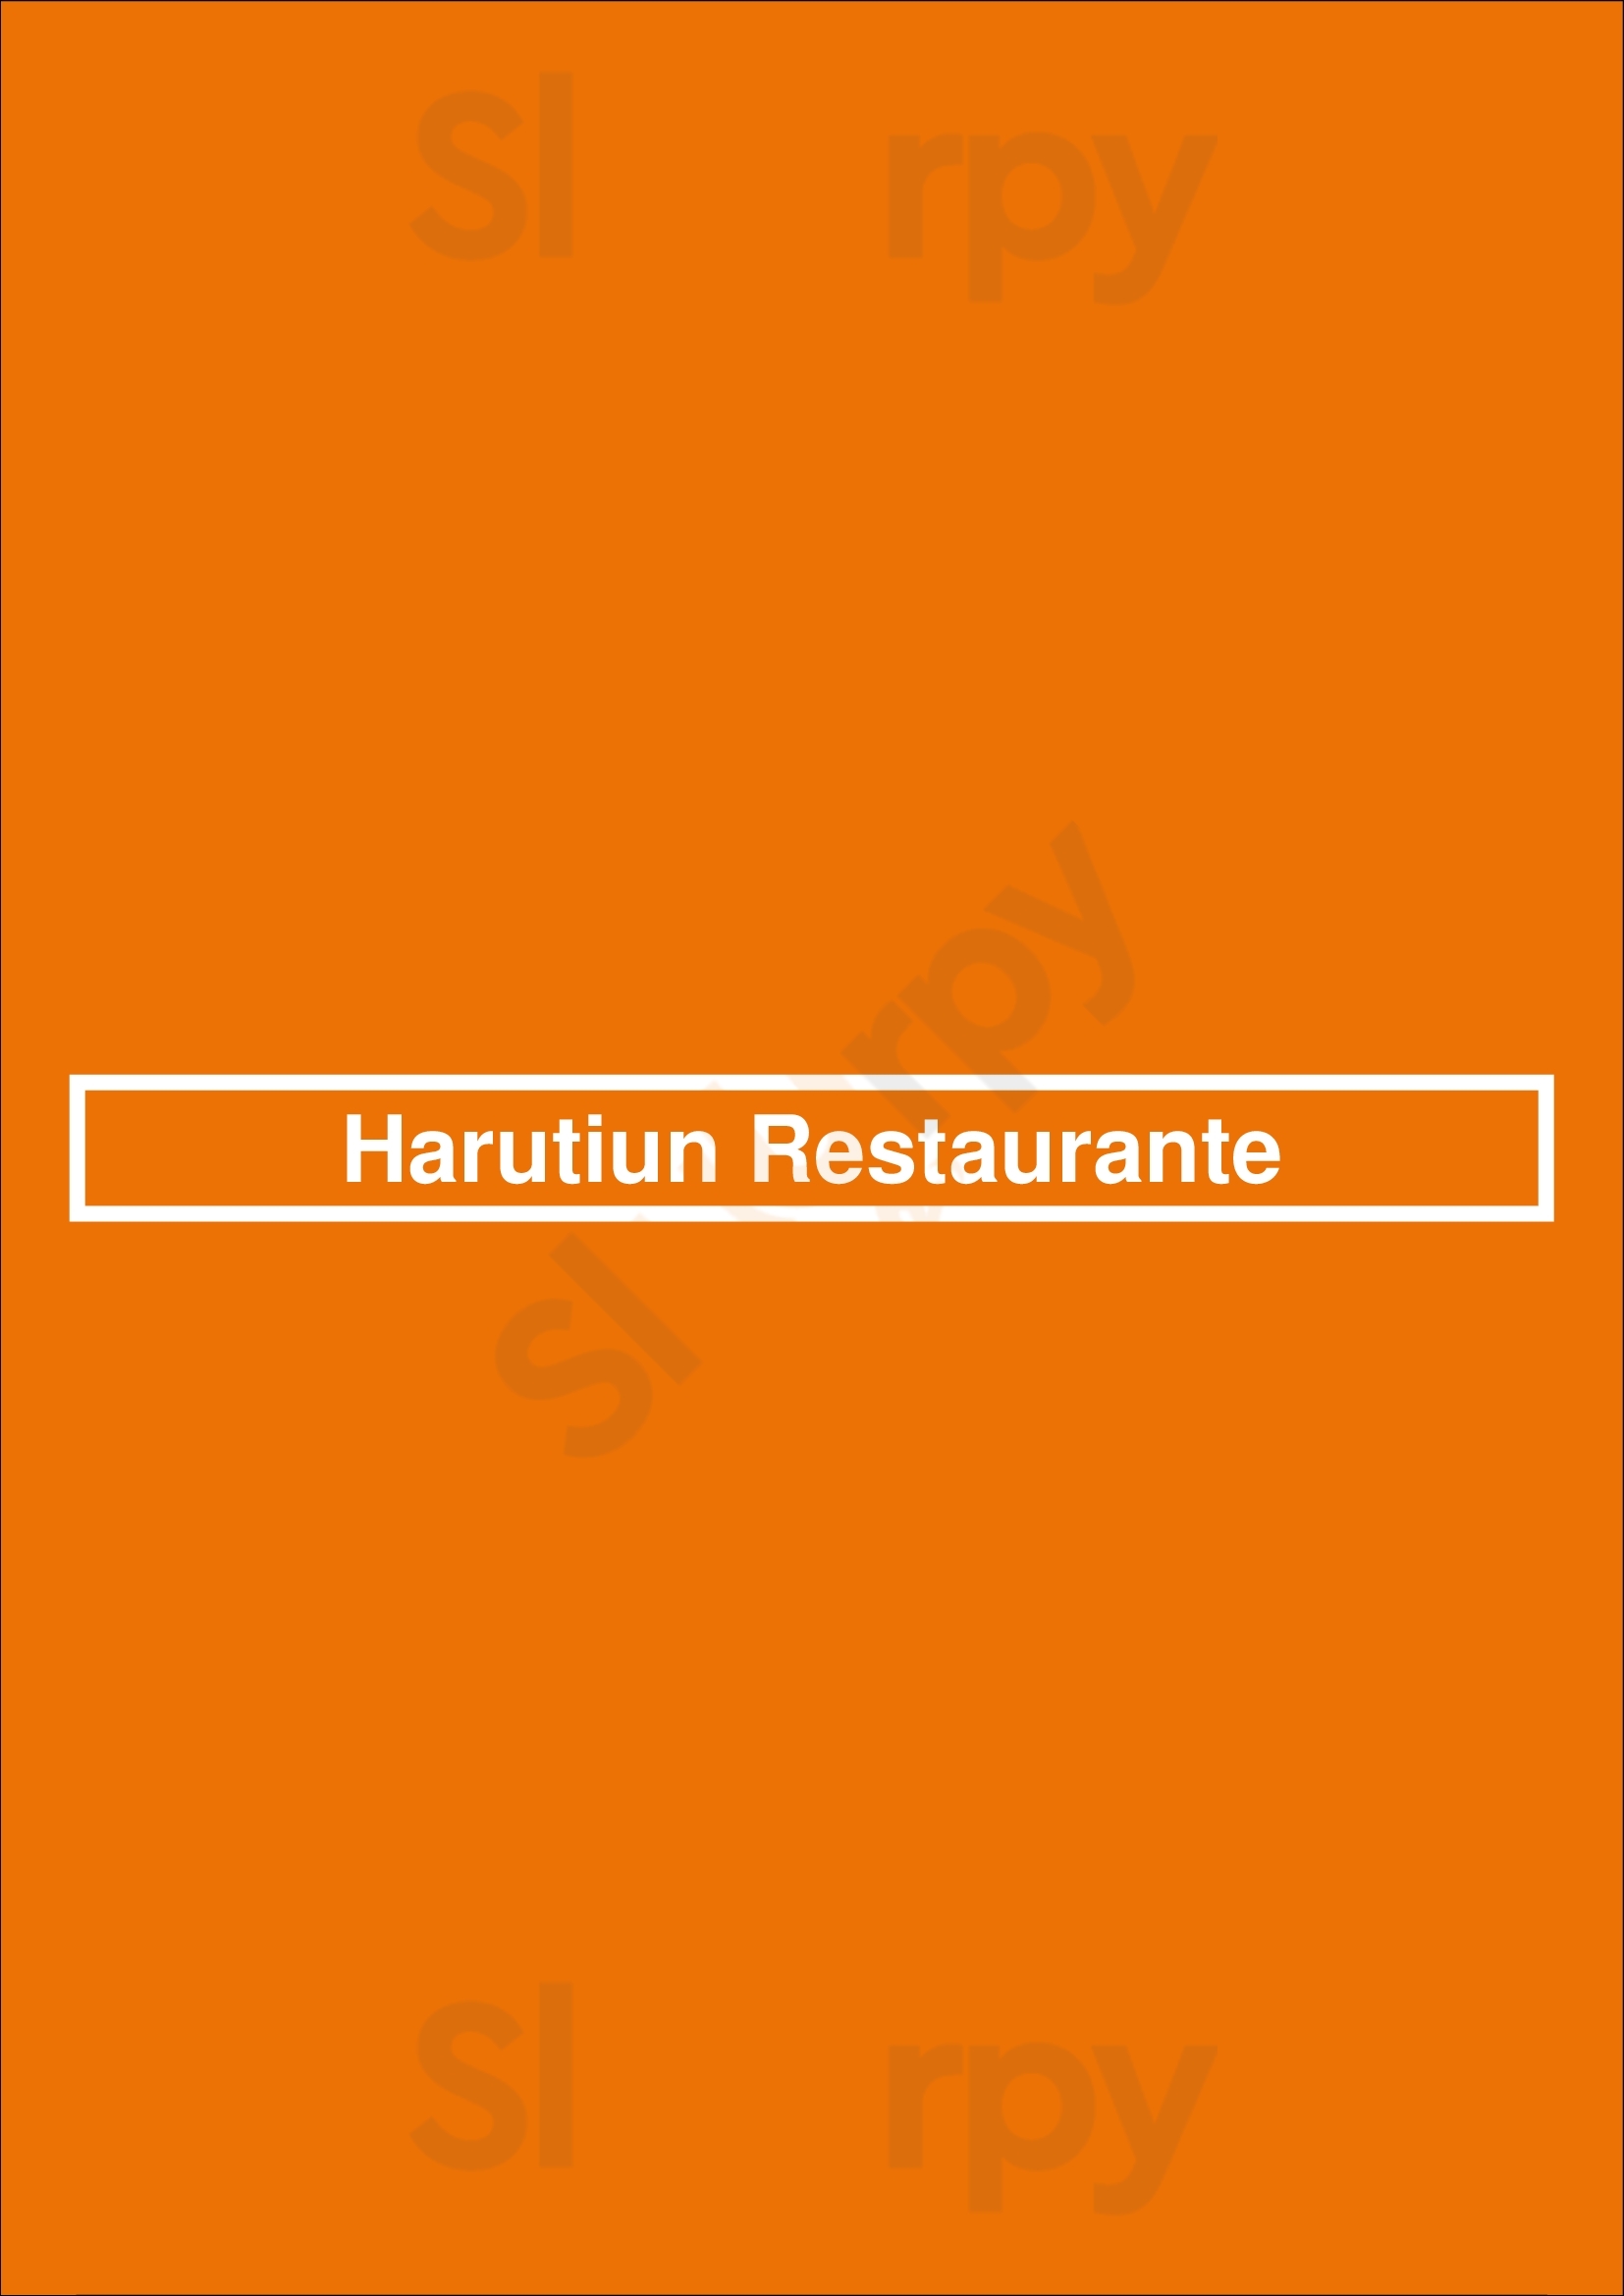 Harutiun Restaurante Buenos Aires Menu - 1